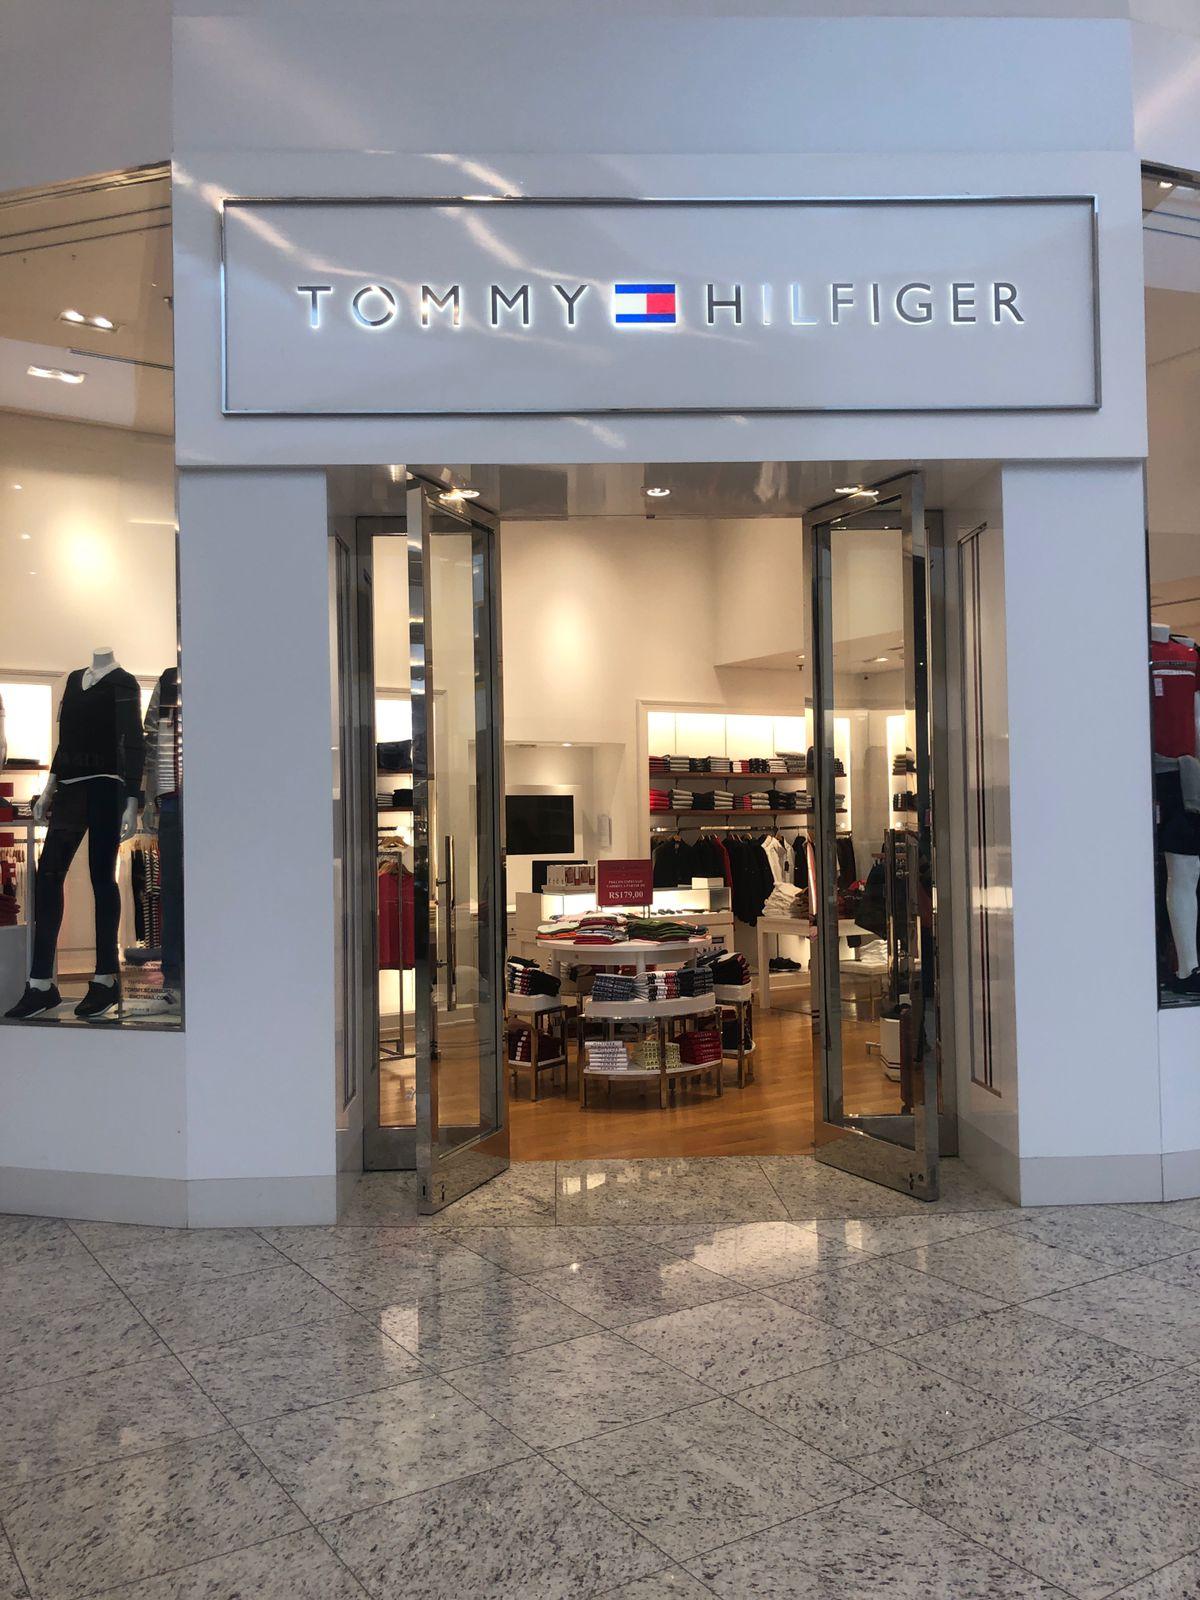 Neumarkt Shopping - Novidade no Neumarkt Shopping, a Tommy Hilfiger chegou  em Blumenau! Uma das marcas de lifestyle mais reconhecidas mundialmente.  Vem conhecer! #NeumarktShopping #TommyHilfiger #NovaLoja